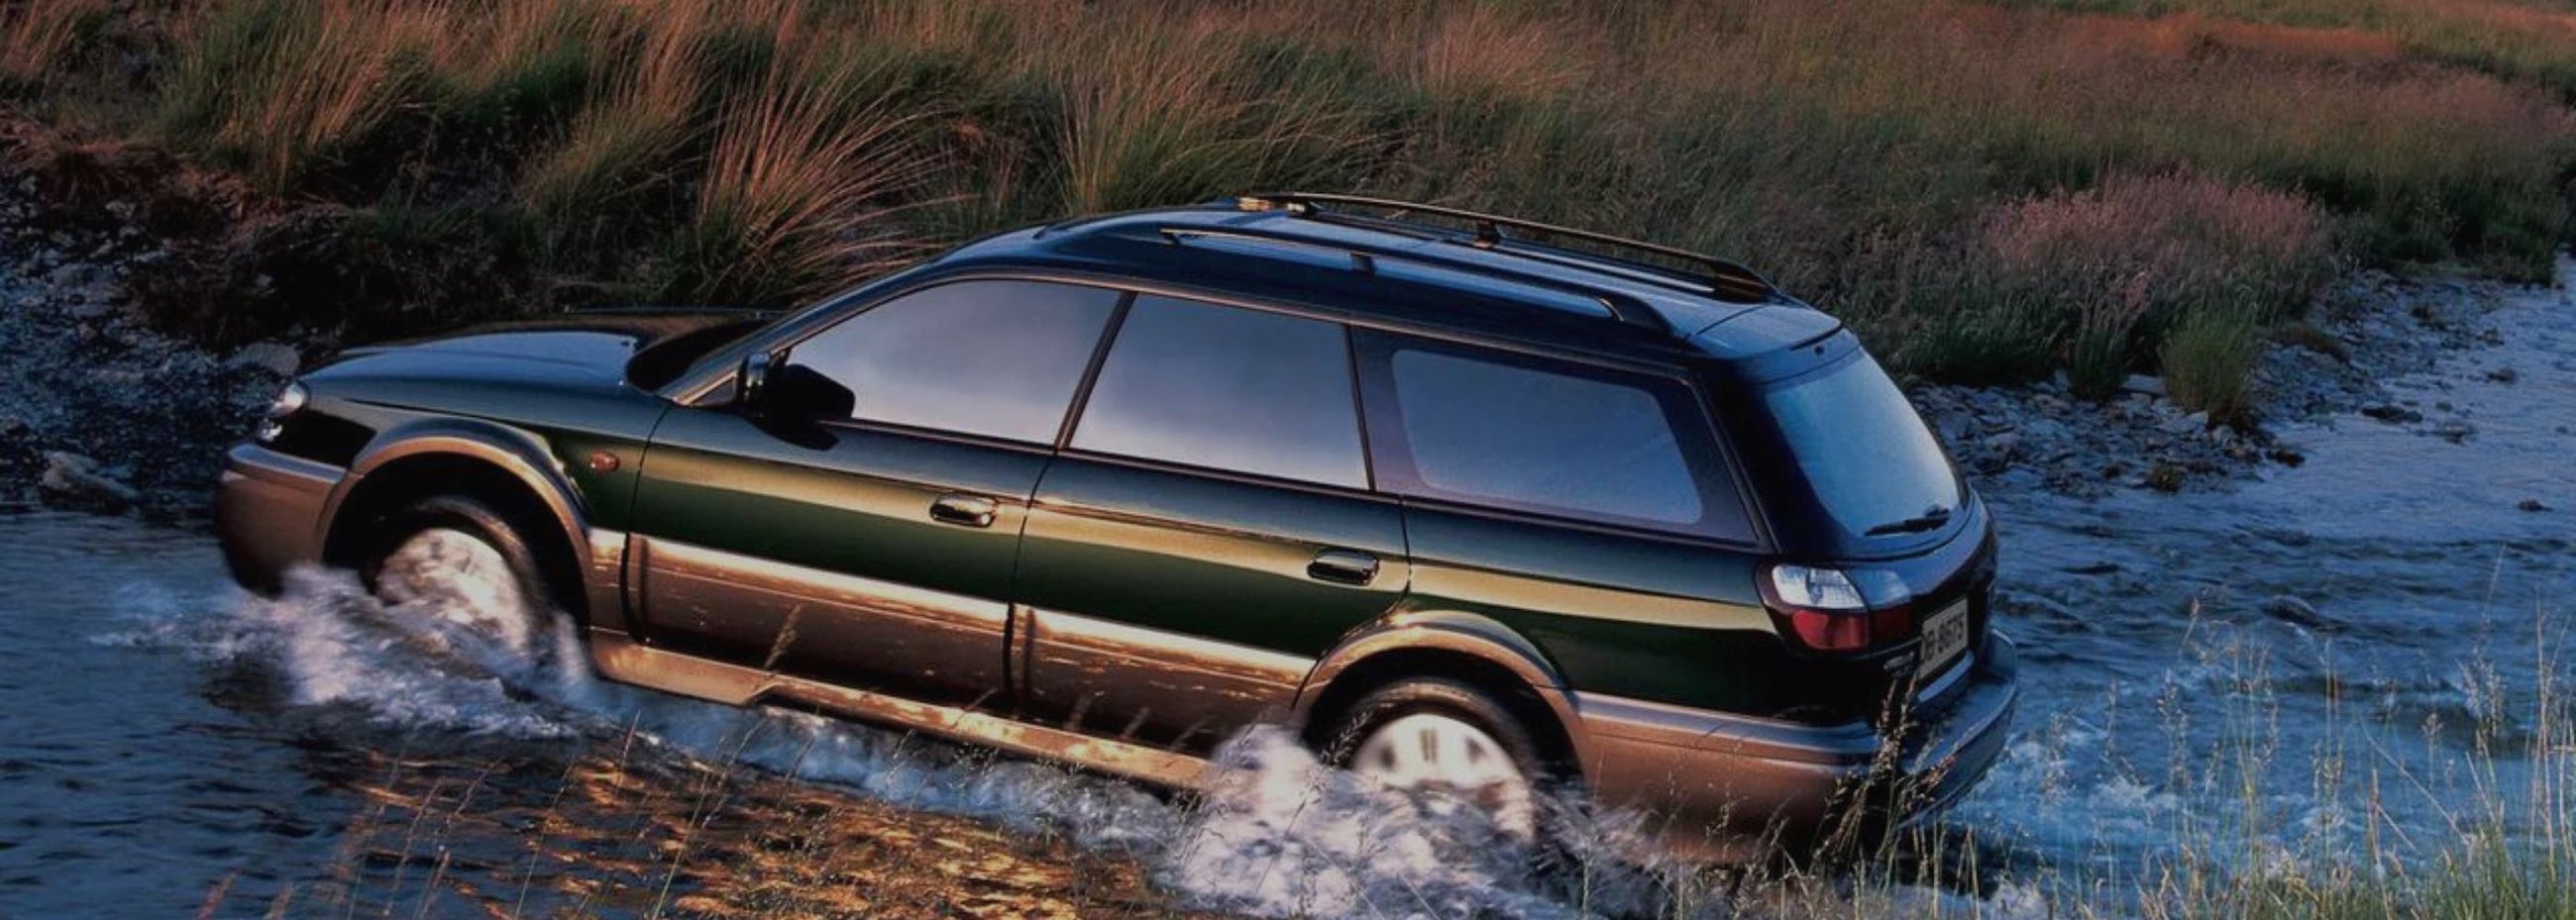 Subaru - Outback 2000 - 2003